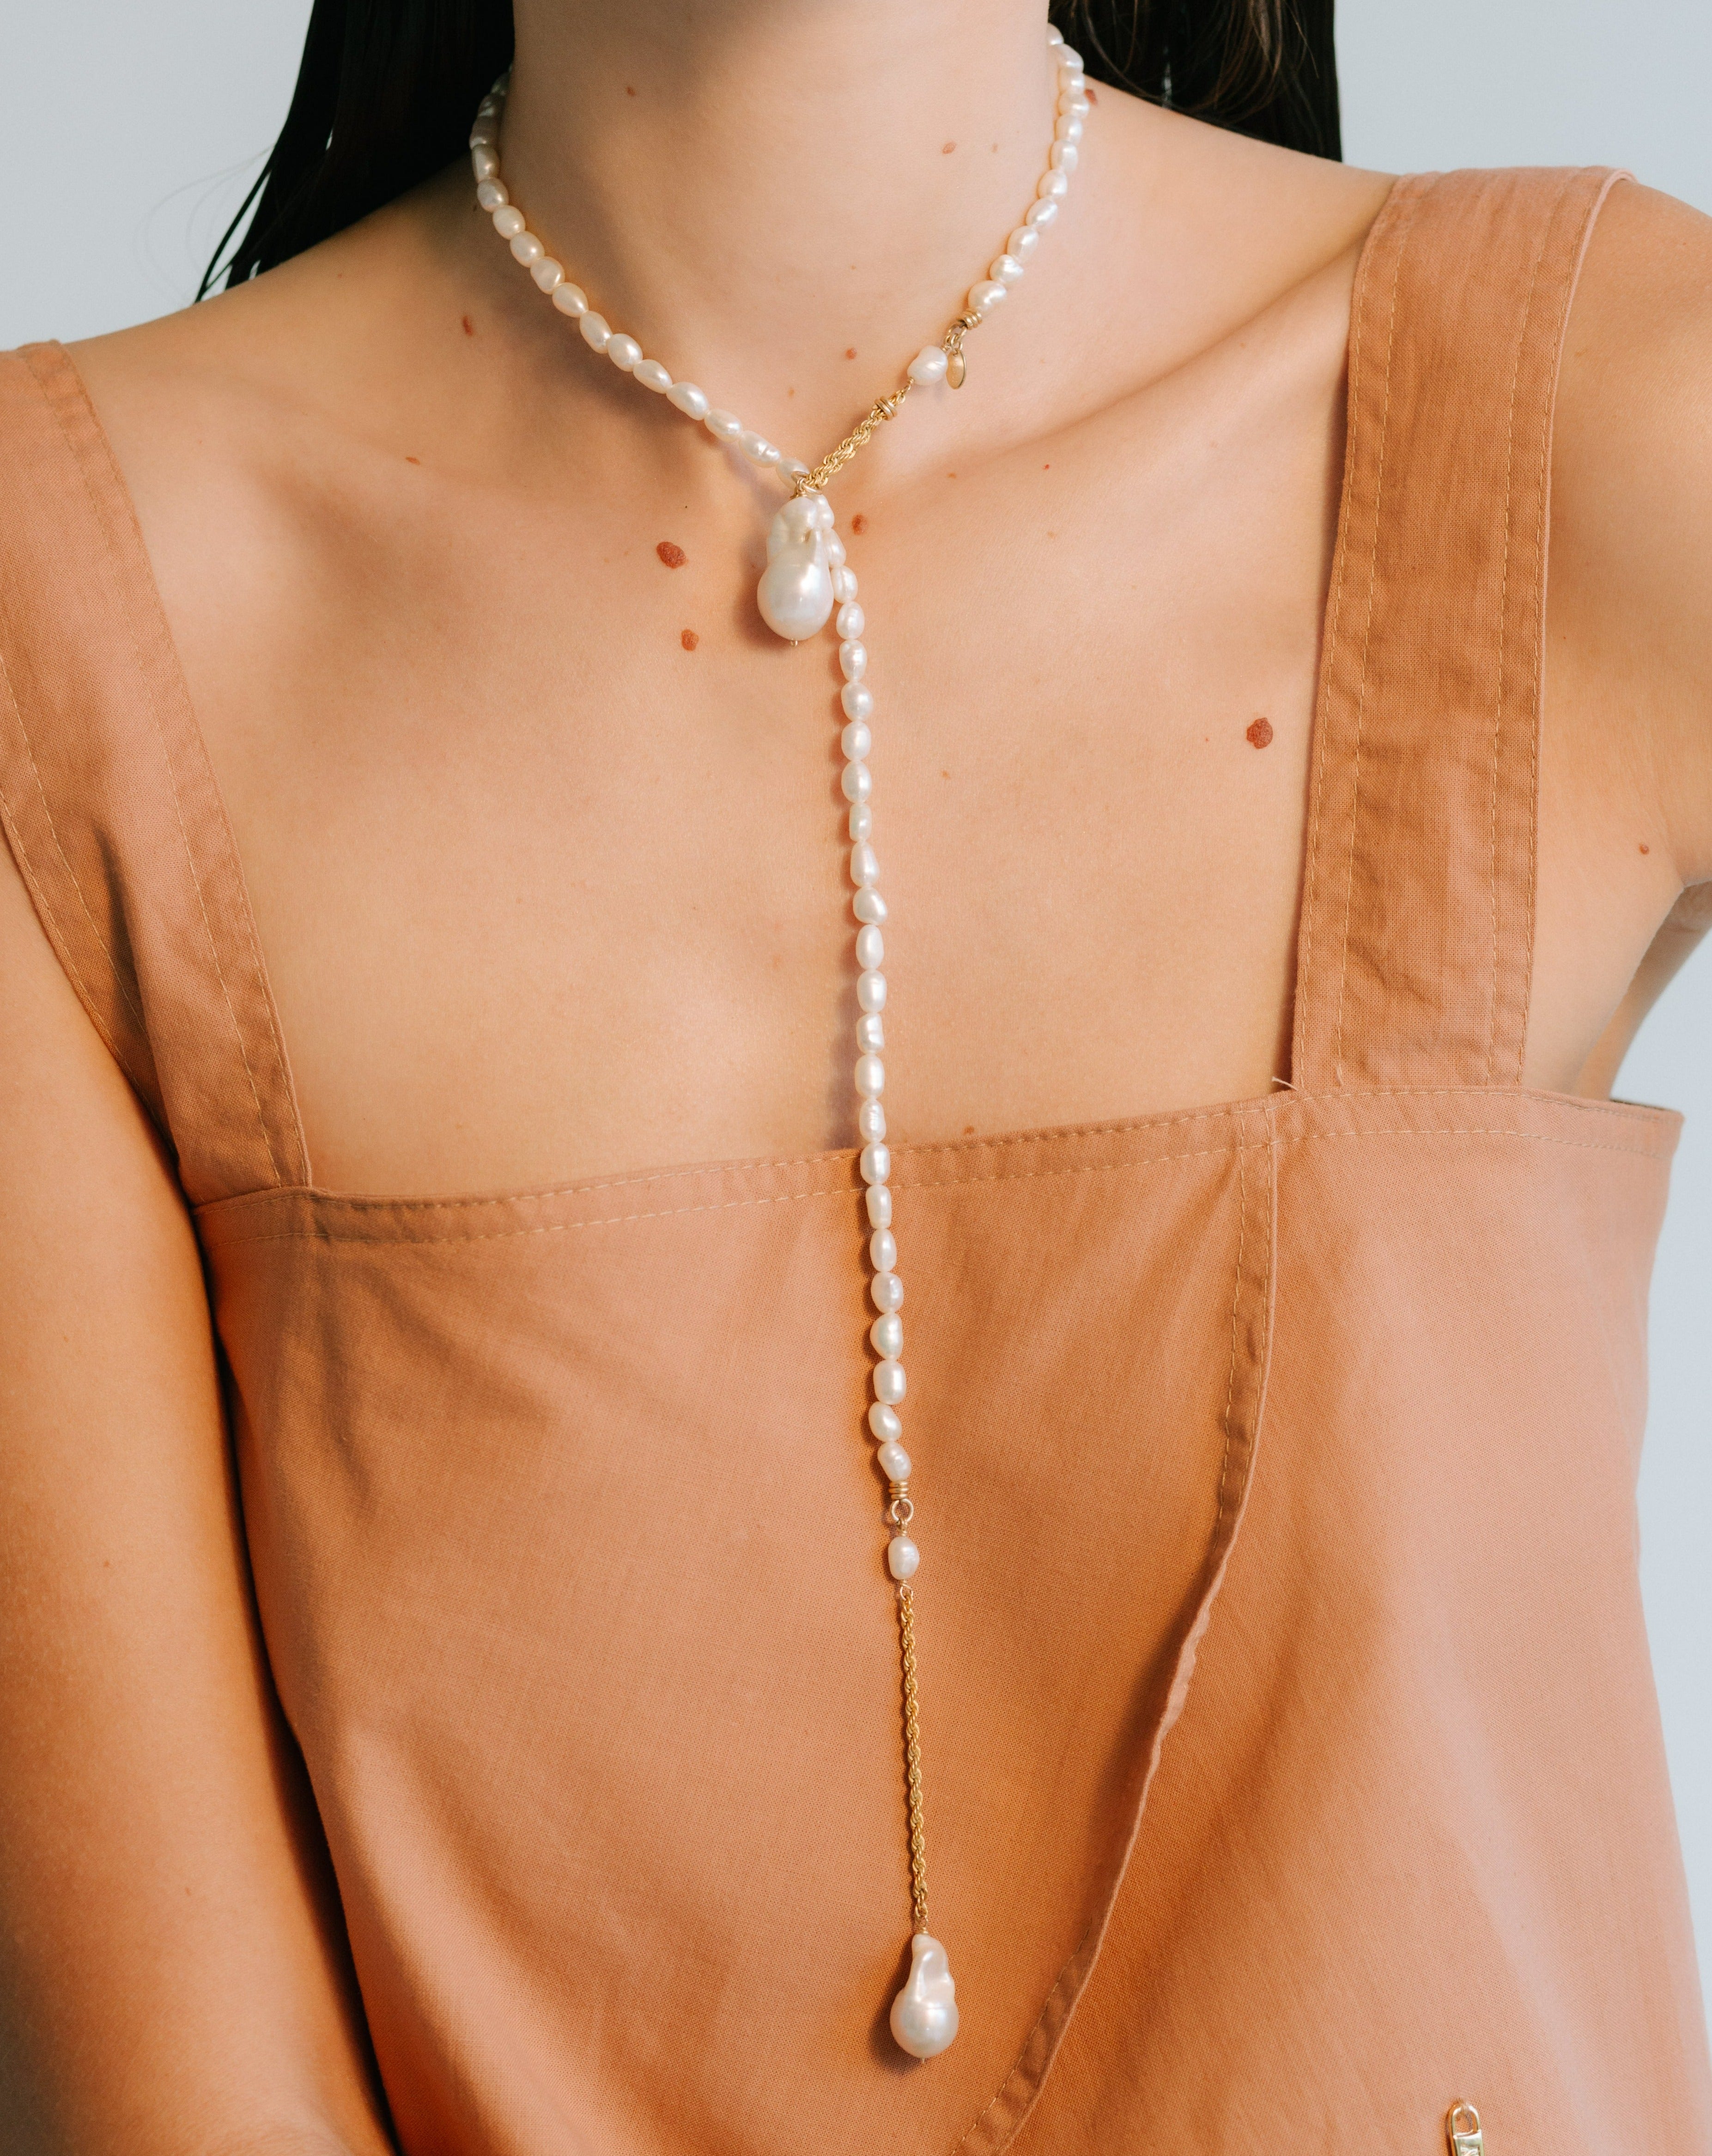 Barroca Necklace #4 - Pearl